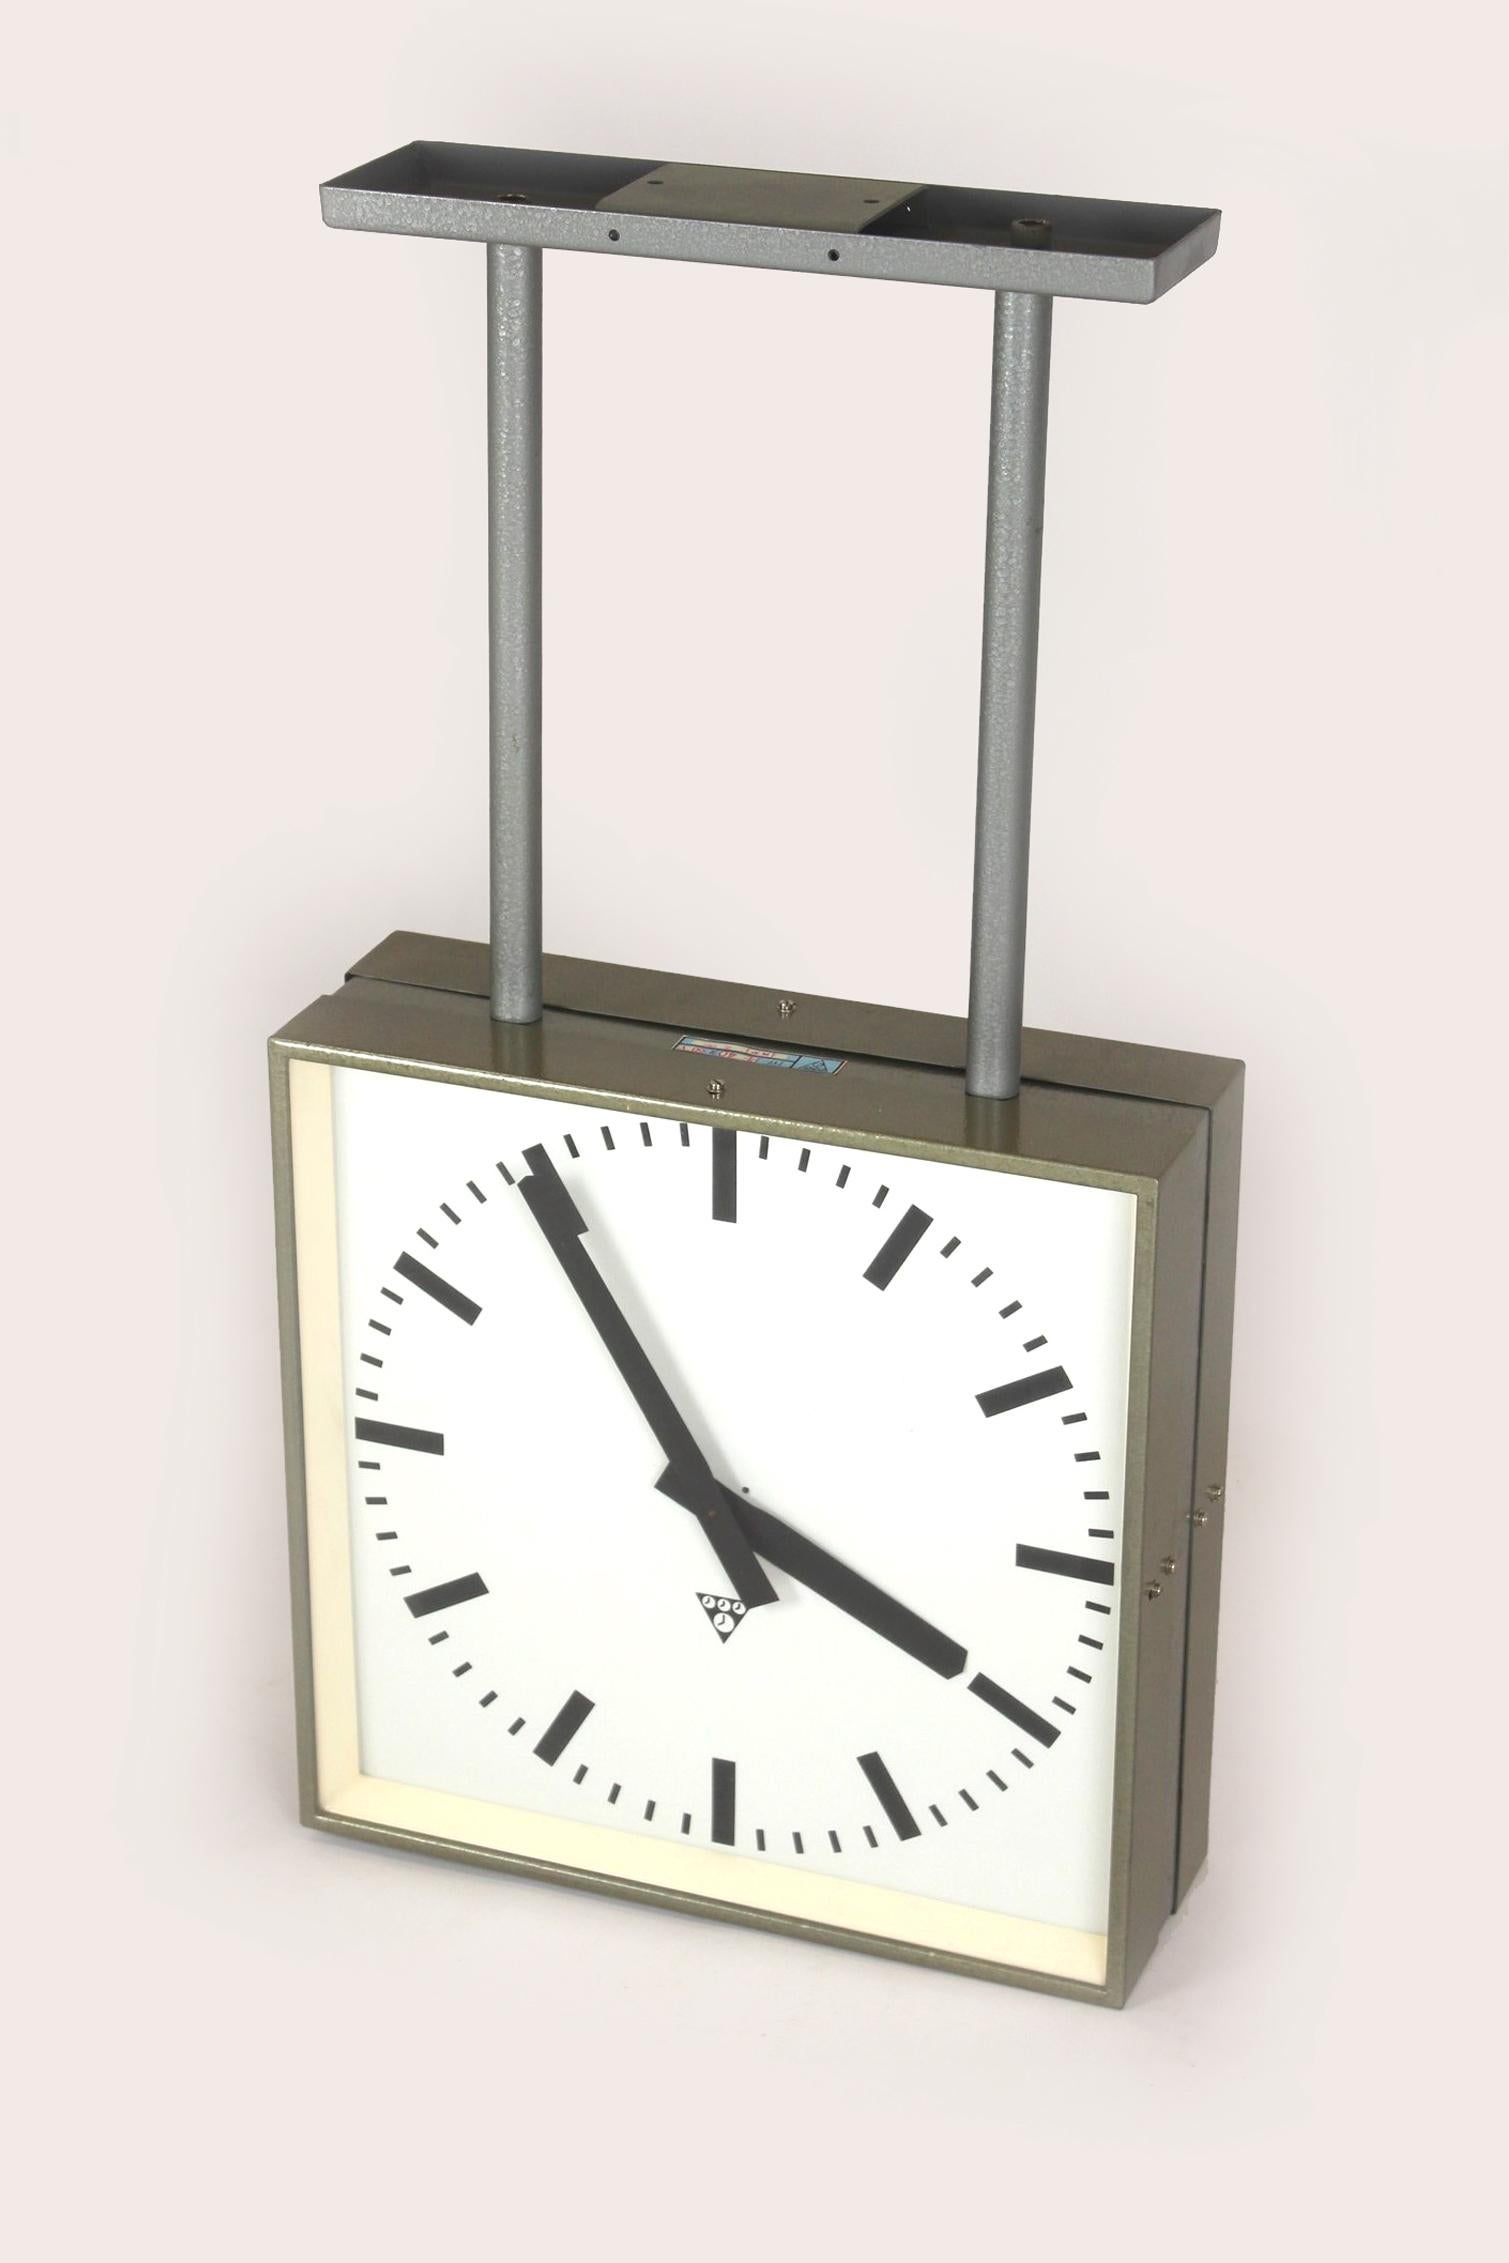 Große doppelseitige Eisenbahnuhr, hergestellt von Pragotron in der ehemaligen Tschechoslowakei in den 1980er Jahren.
Die Uhr ist brandneu und wurde nie benutzt. Im Originalkarton verpackt, wurde es nur zu Fotozwecken zusammengebaut. Die Uhr wurde in